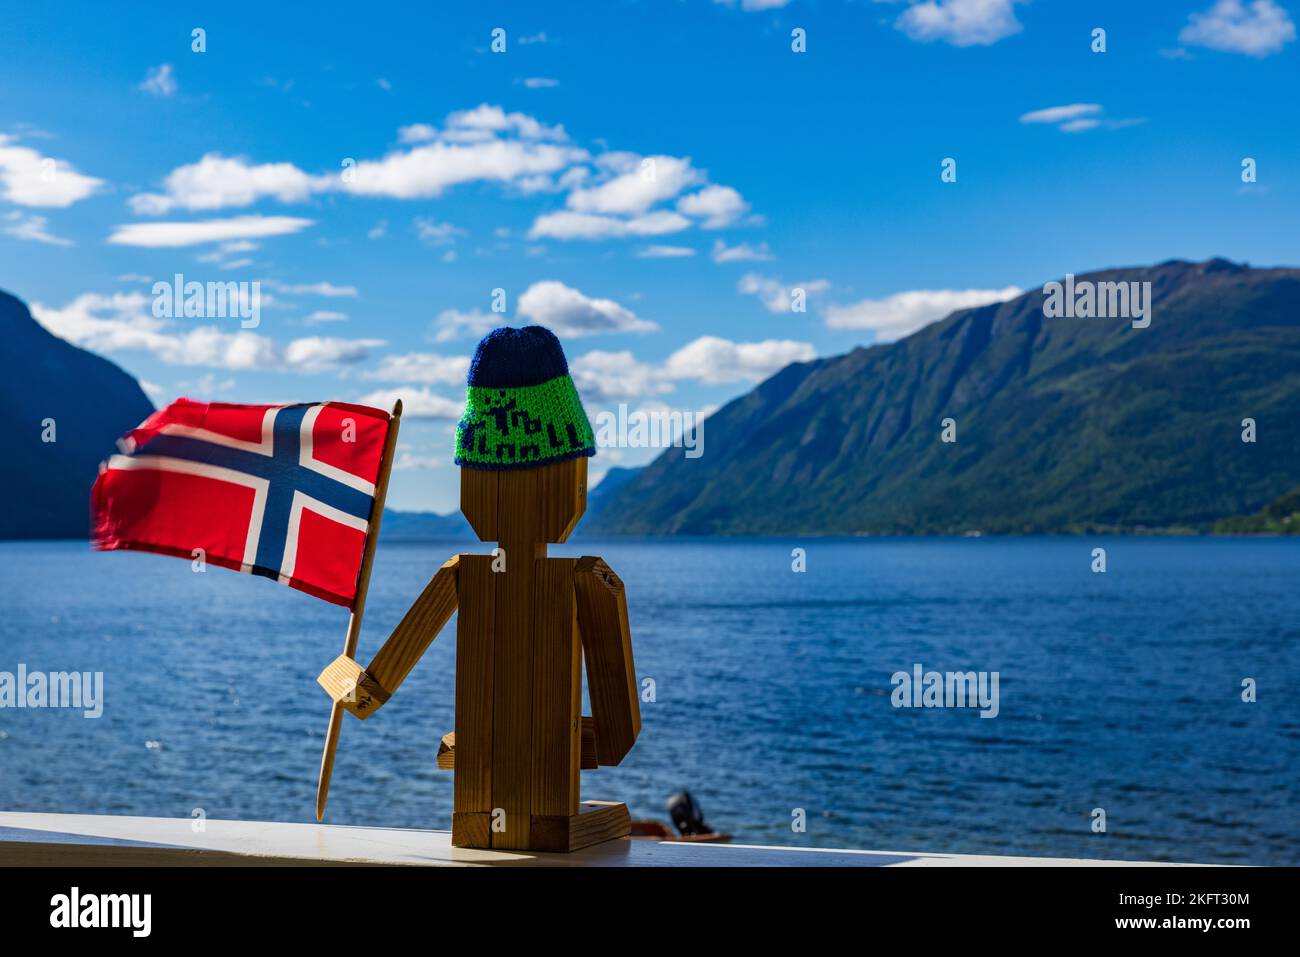 Norwegian wooden figure in Sandviken, Norway, Europe Stock Photo